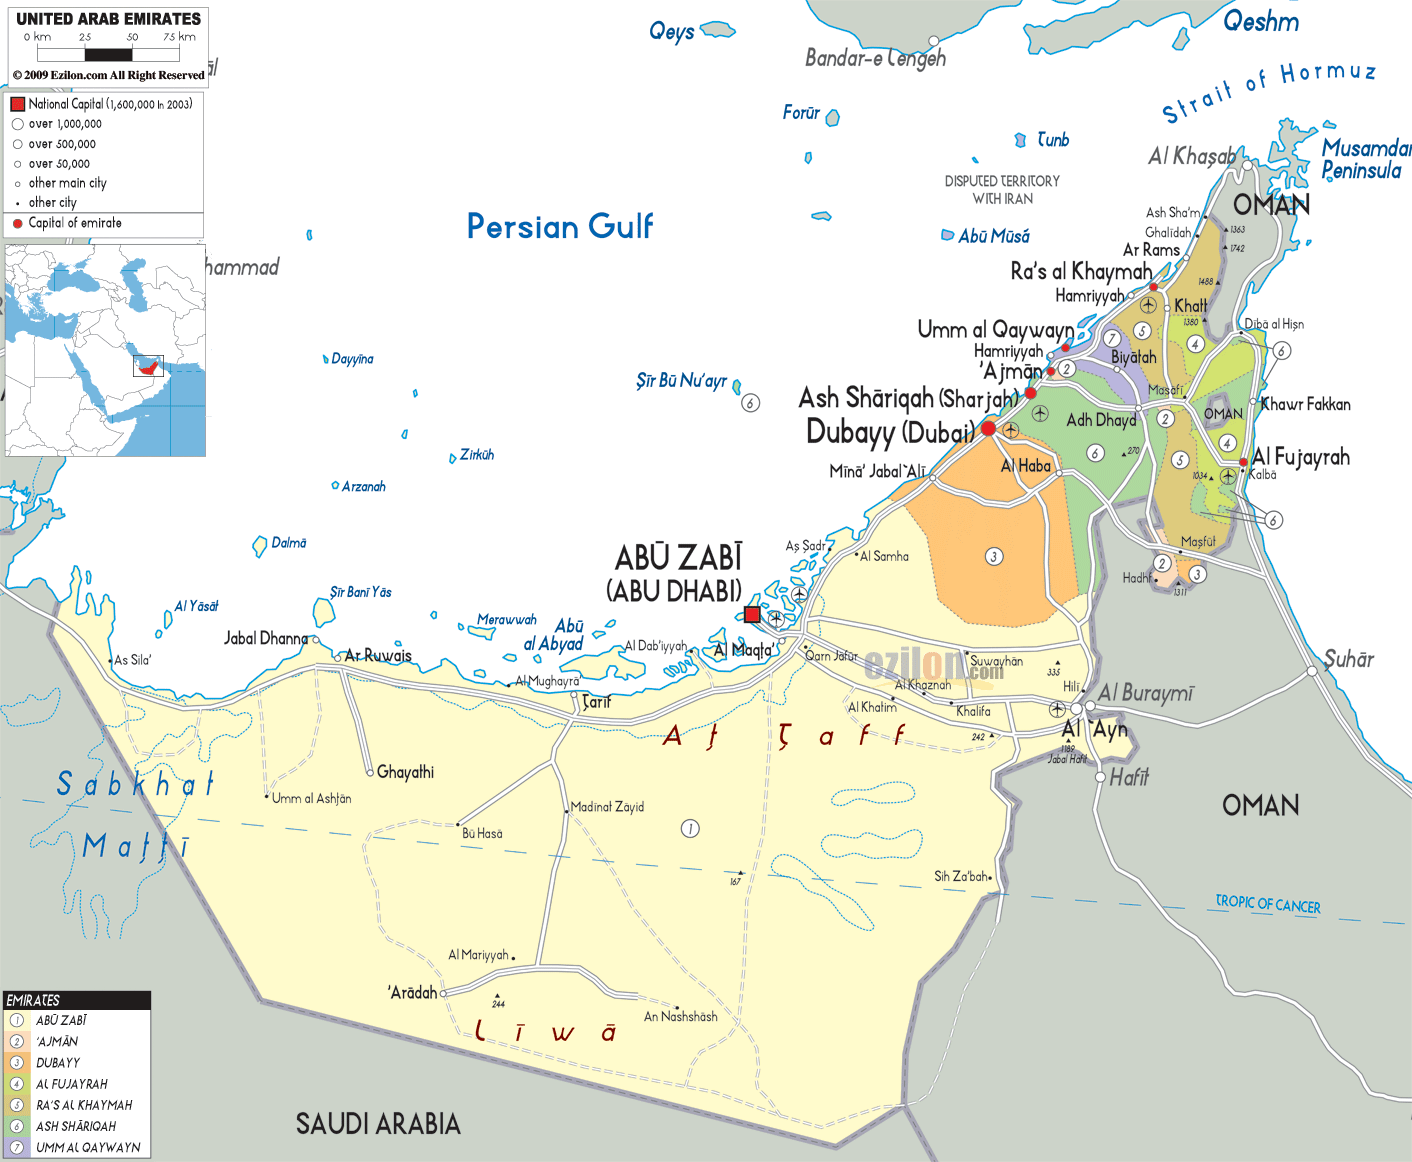 MAPS OF UNITED ARAB EMIRATES